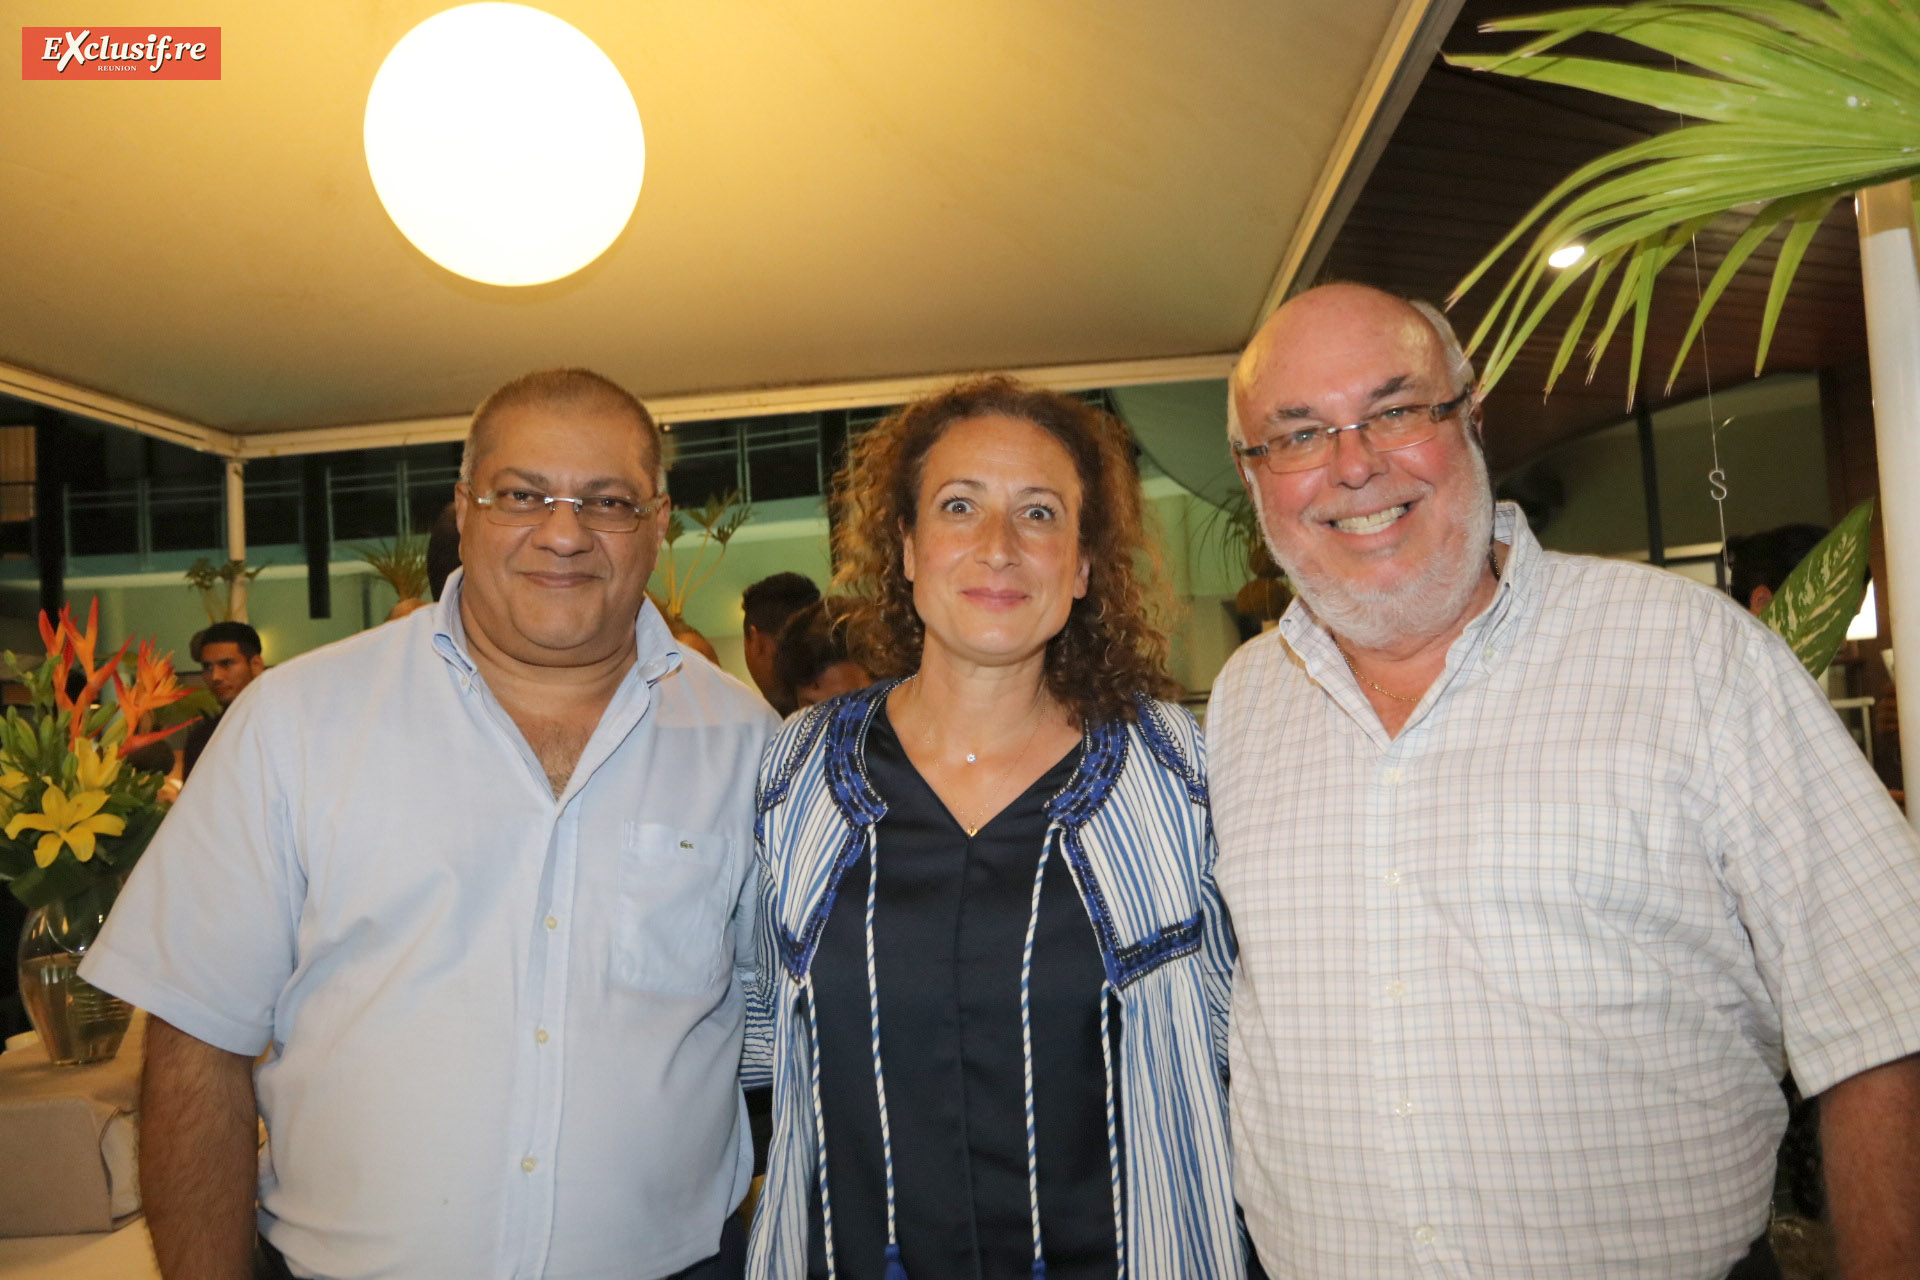 Arzou Mahamadaly, trésorier SICR, Annie Khayat-Tissier, avocate spécialisée en droit des affaires, et Frédéric Foucque, président du SICR